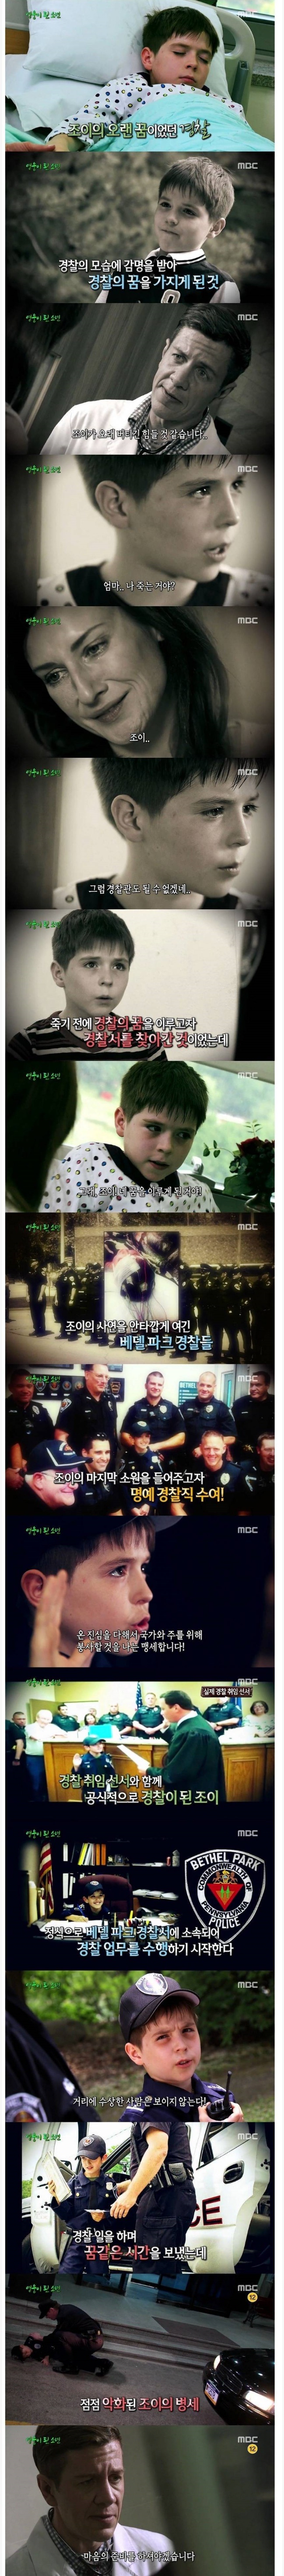  8살짜리 최연소 꼬마 경찰관